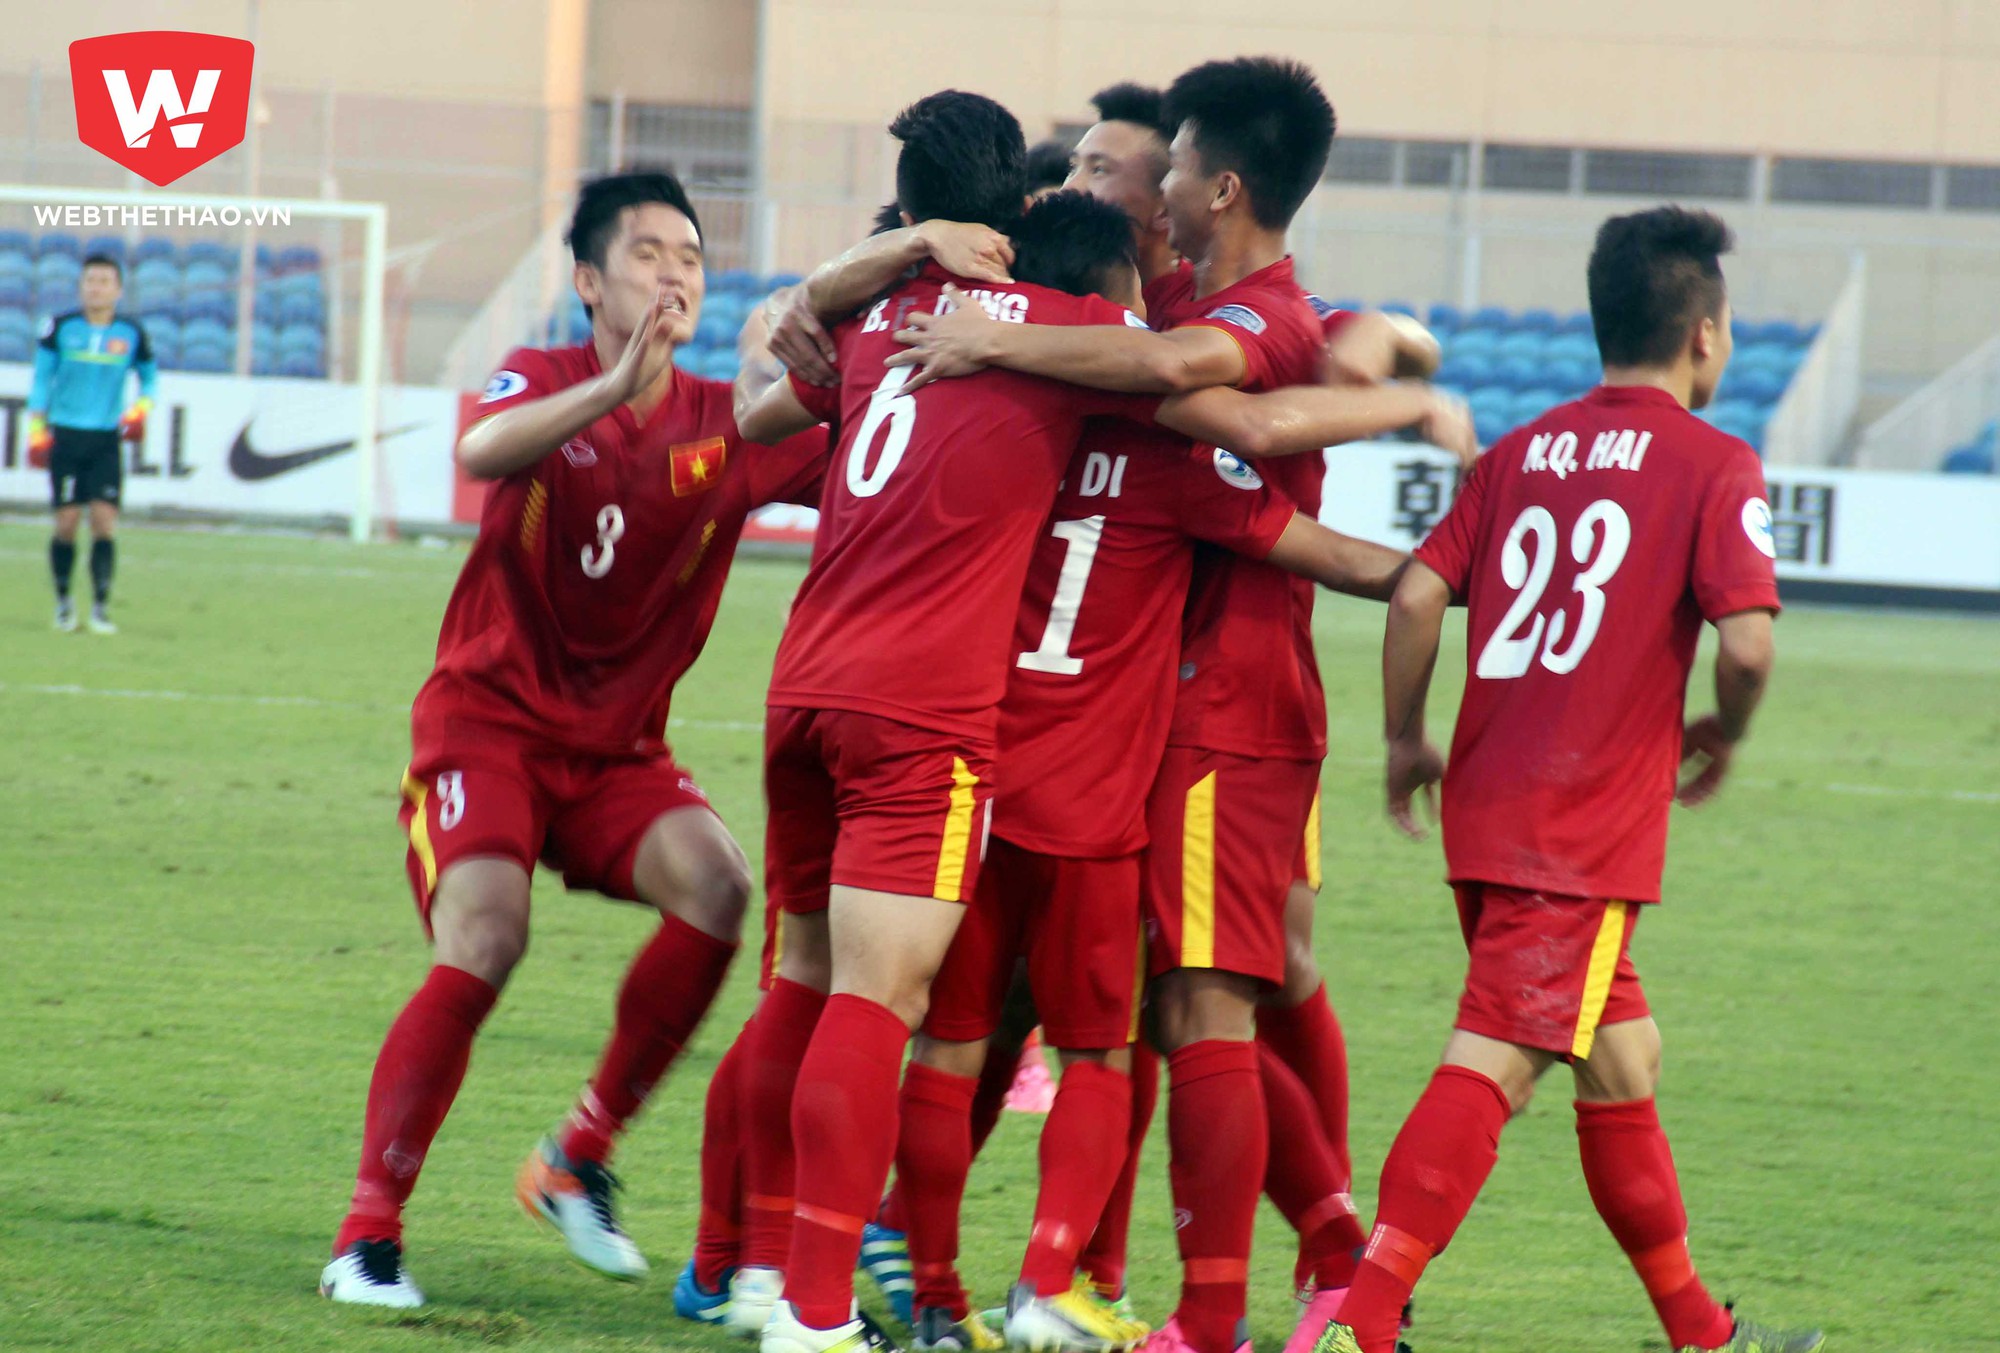 U.19 Việt Nam đã làn nên lịch sử tại VCK U.19 châu Á 2016.